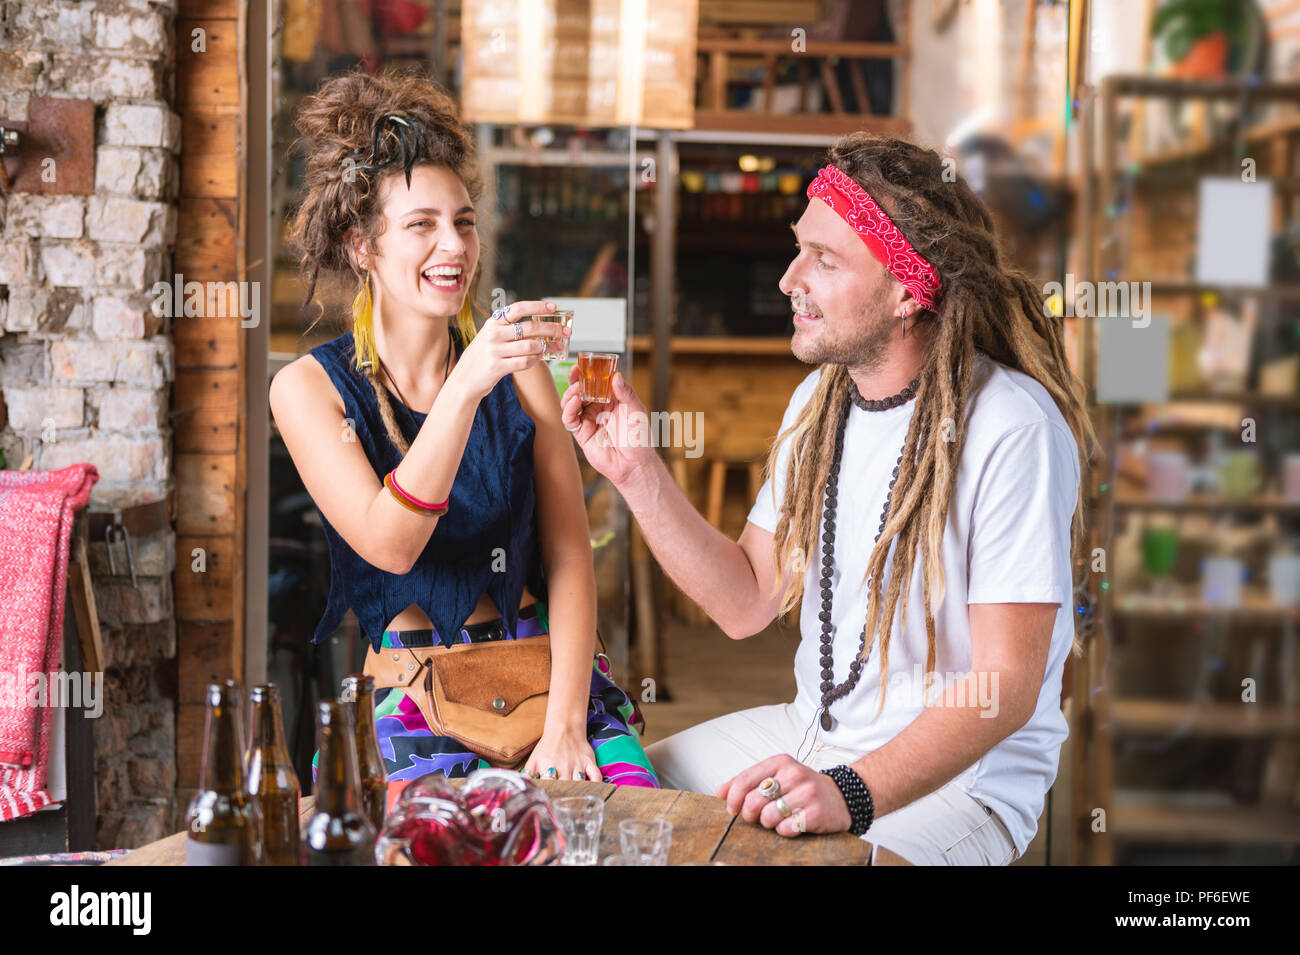 Lachend ein paar Hippies trinken Tequila Hochzeitstag zu feiern Stockfoto